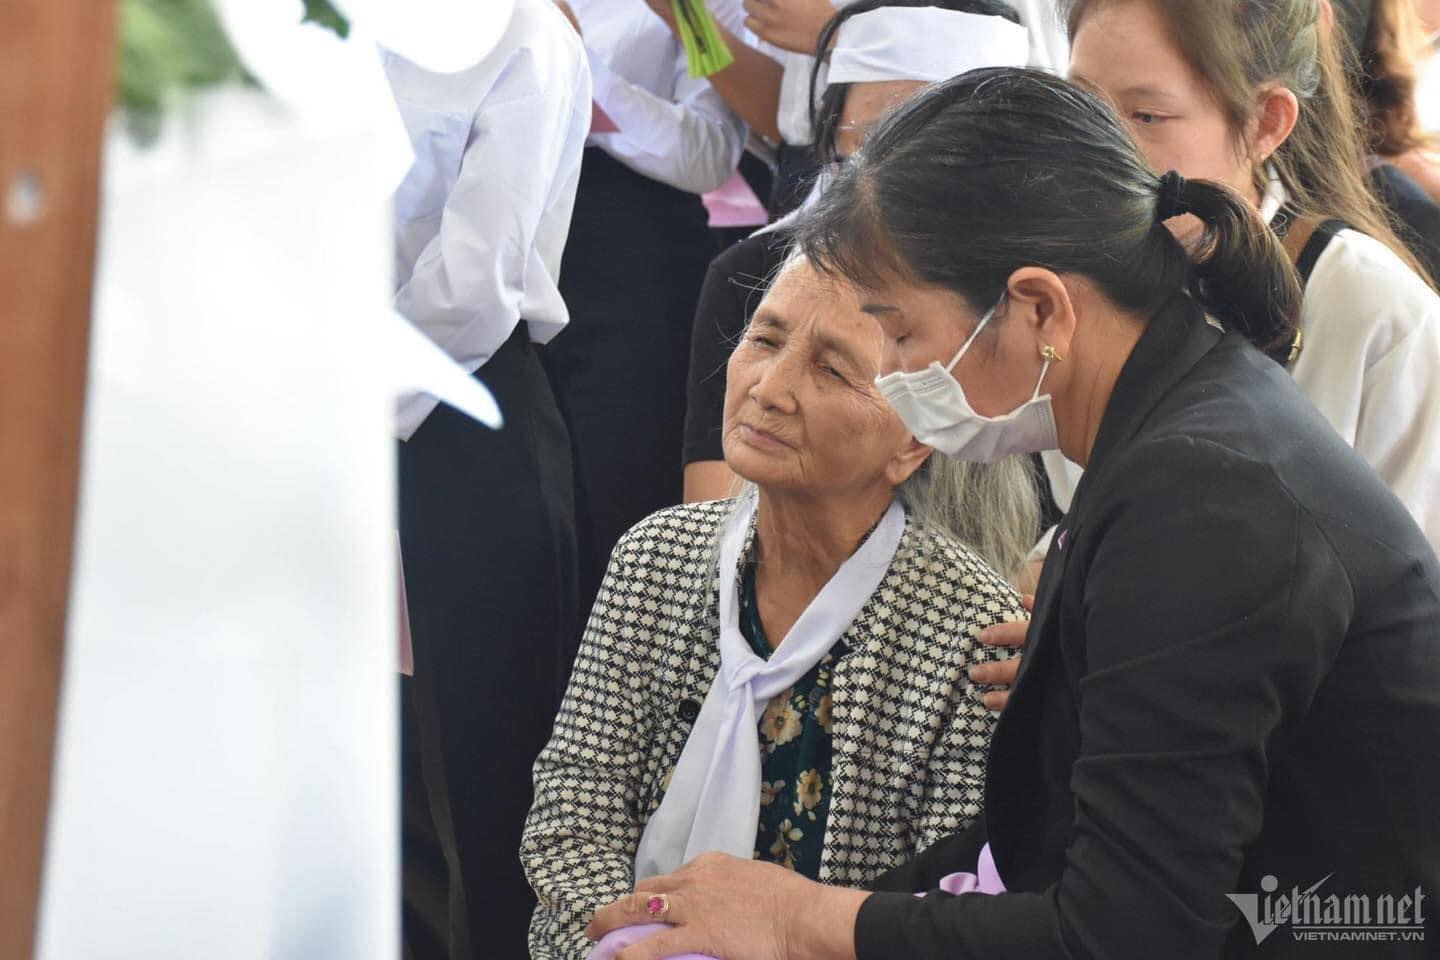 Tang lễ đầy nước mắt của 4 mẹ con bị bố ruột hạ độc ở Khánh Hòa: Ước mơ dang dở của các con bị bỏ lỡ - Hình 2